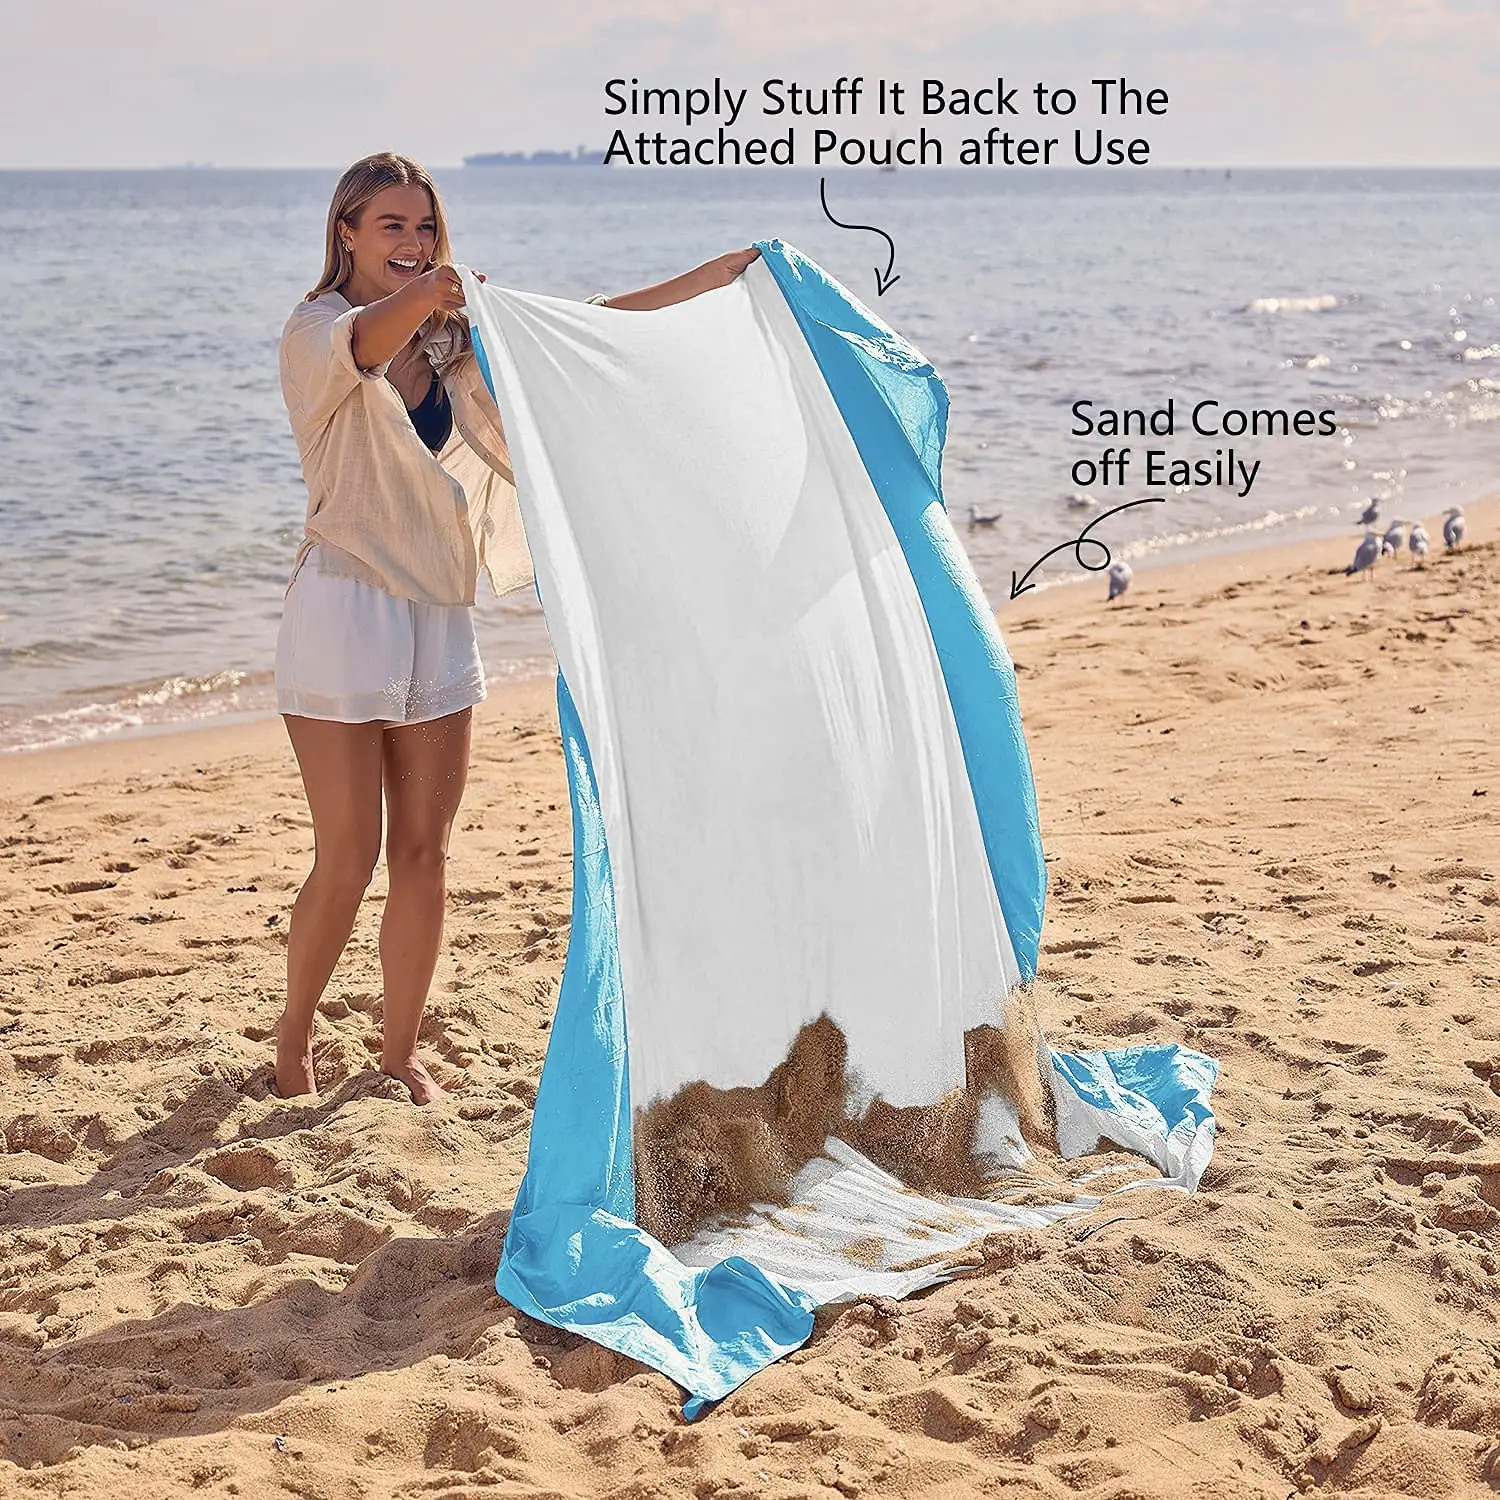 Cobertor de praia areia, tapete de praia extra grande, leve e durável com 6 peças e 4 bolsos de canto